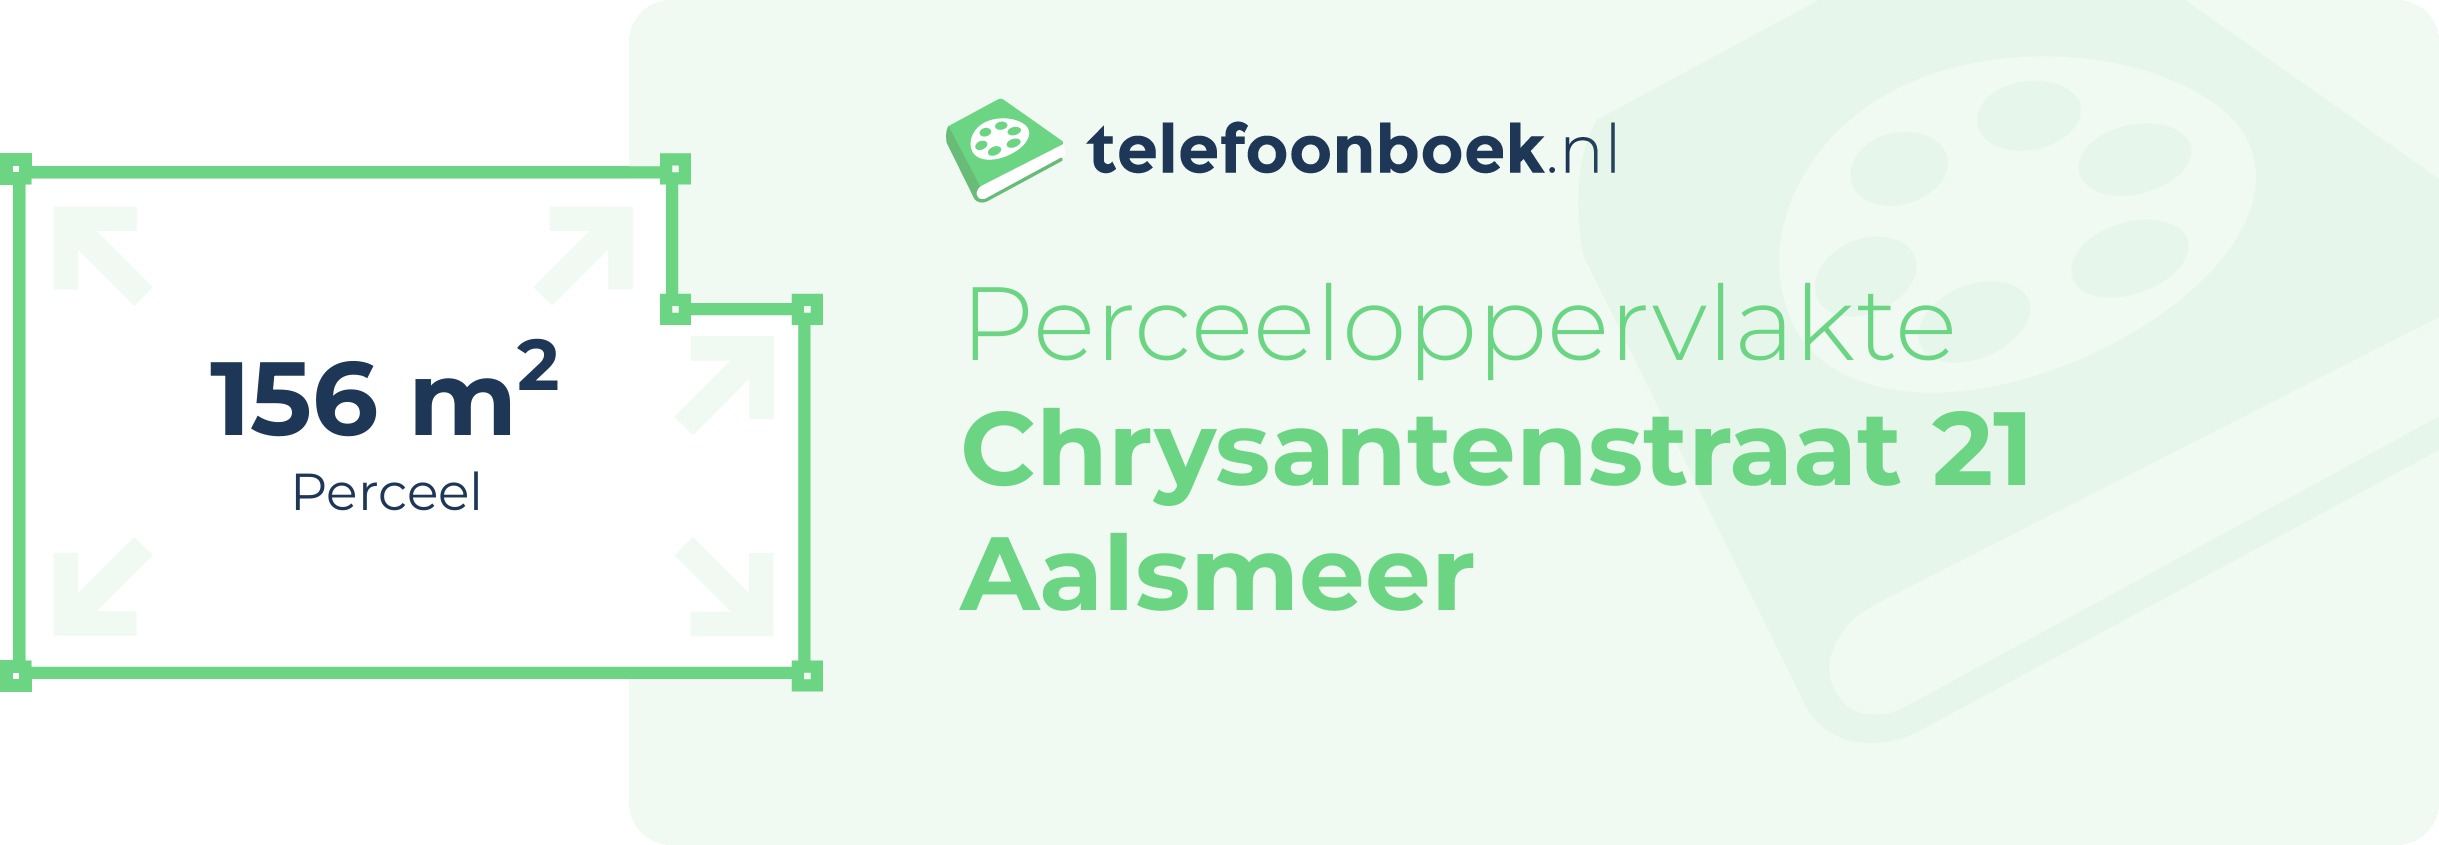 Perceeloppervlakte Chrysantenstraat 21 Aalsmeer